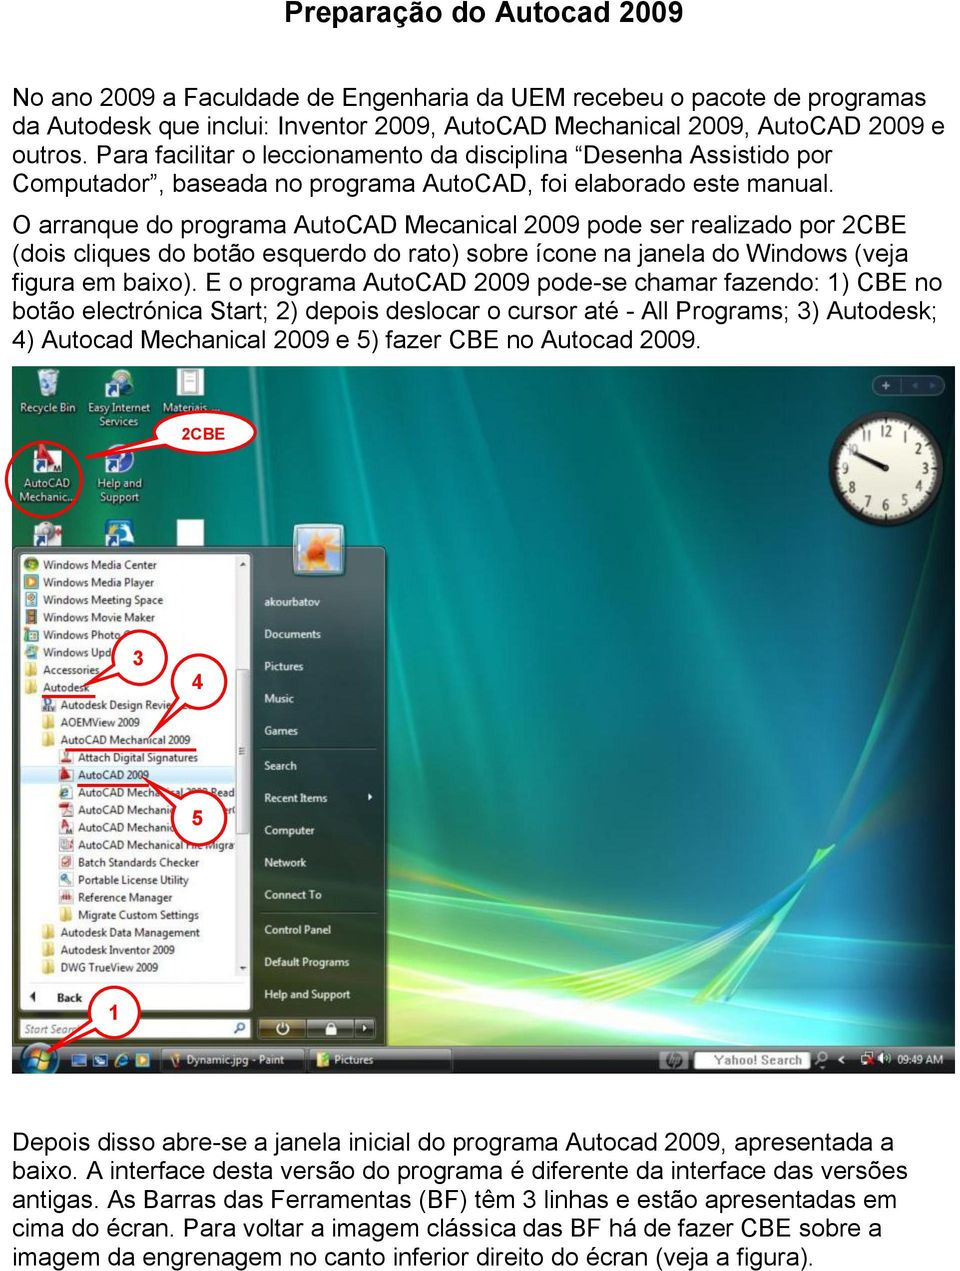 O arranque do programa AutoCAD Mecanical 2009 pode ser realizado por 2 (dois cliques do botão esquerdo do rato) sobre ícone na janela do Windows (veja figura em baixo).